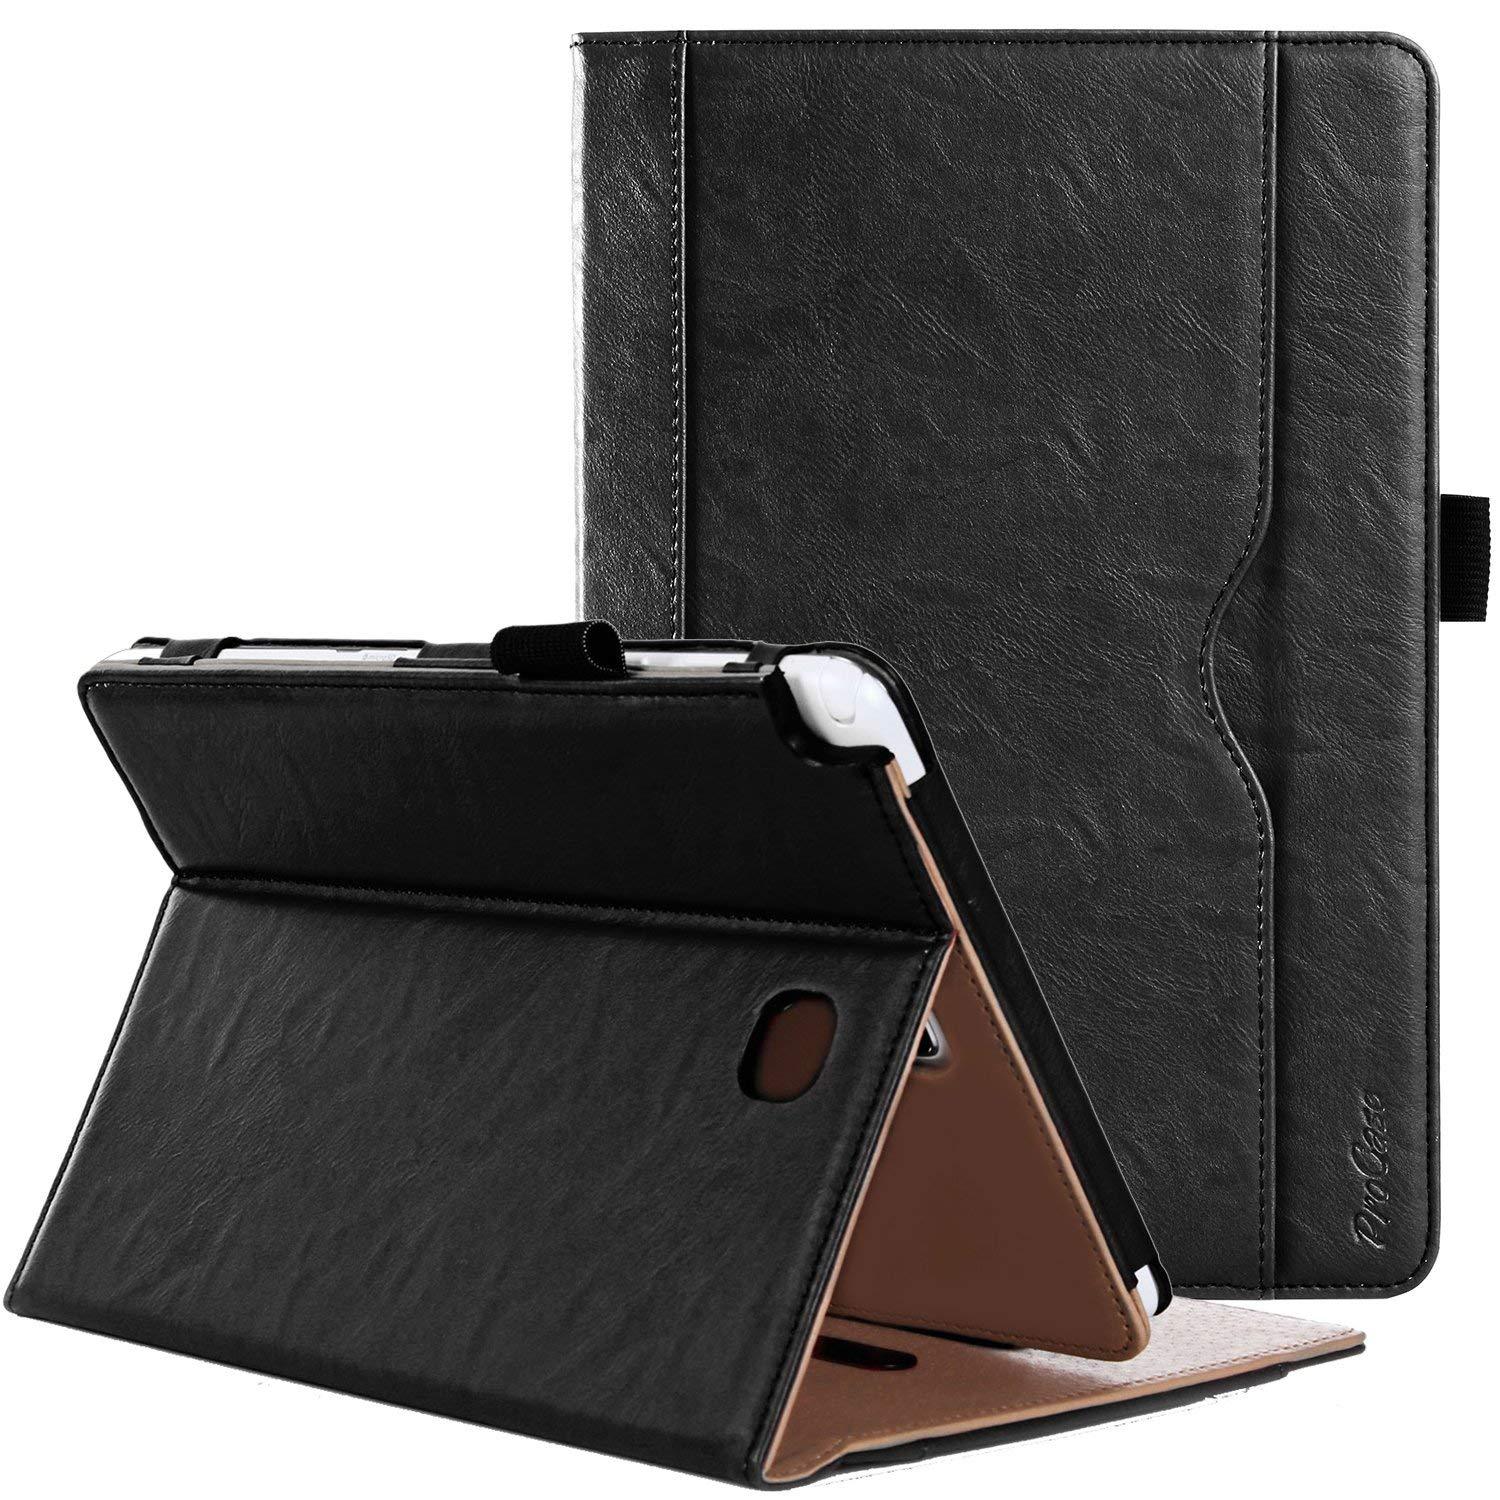 Galaxy Tab A 8.0 2015 T350 Leather Folio Case